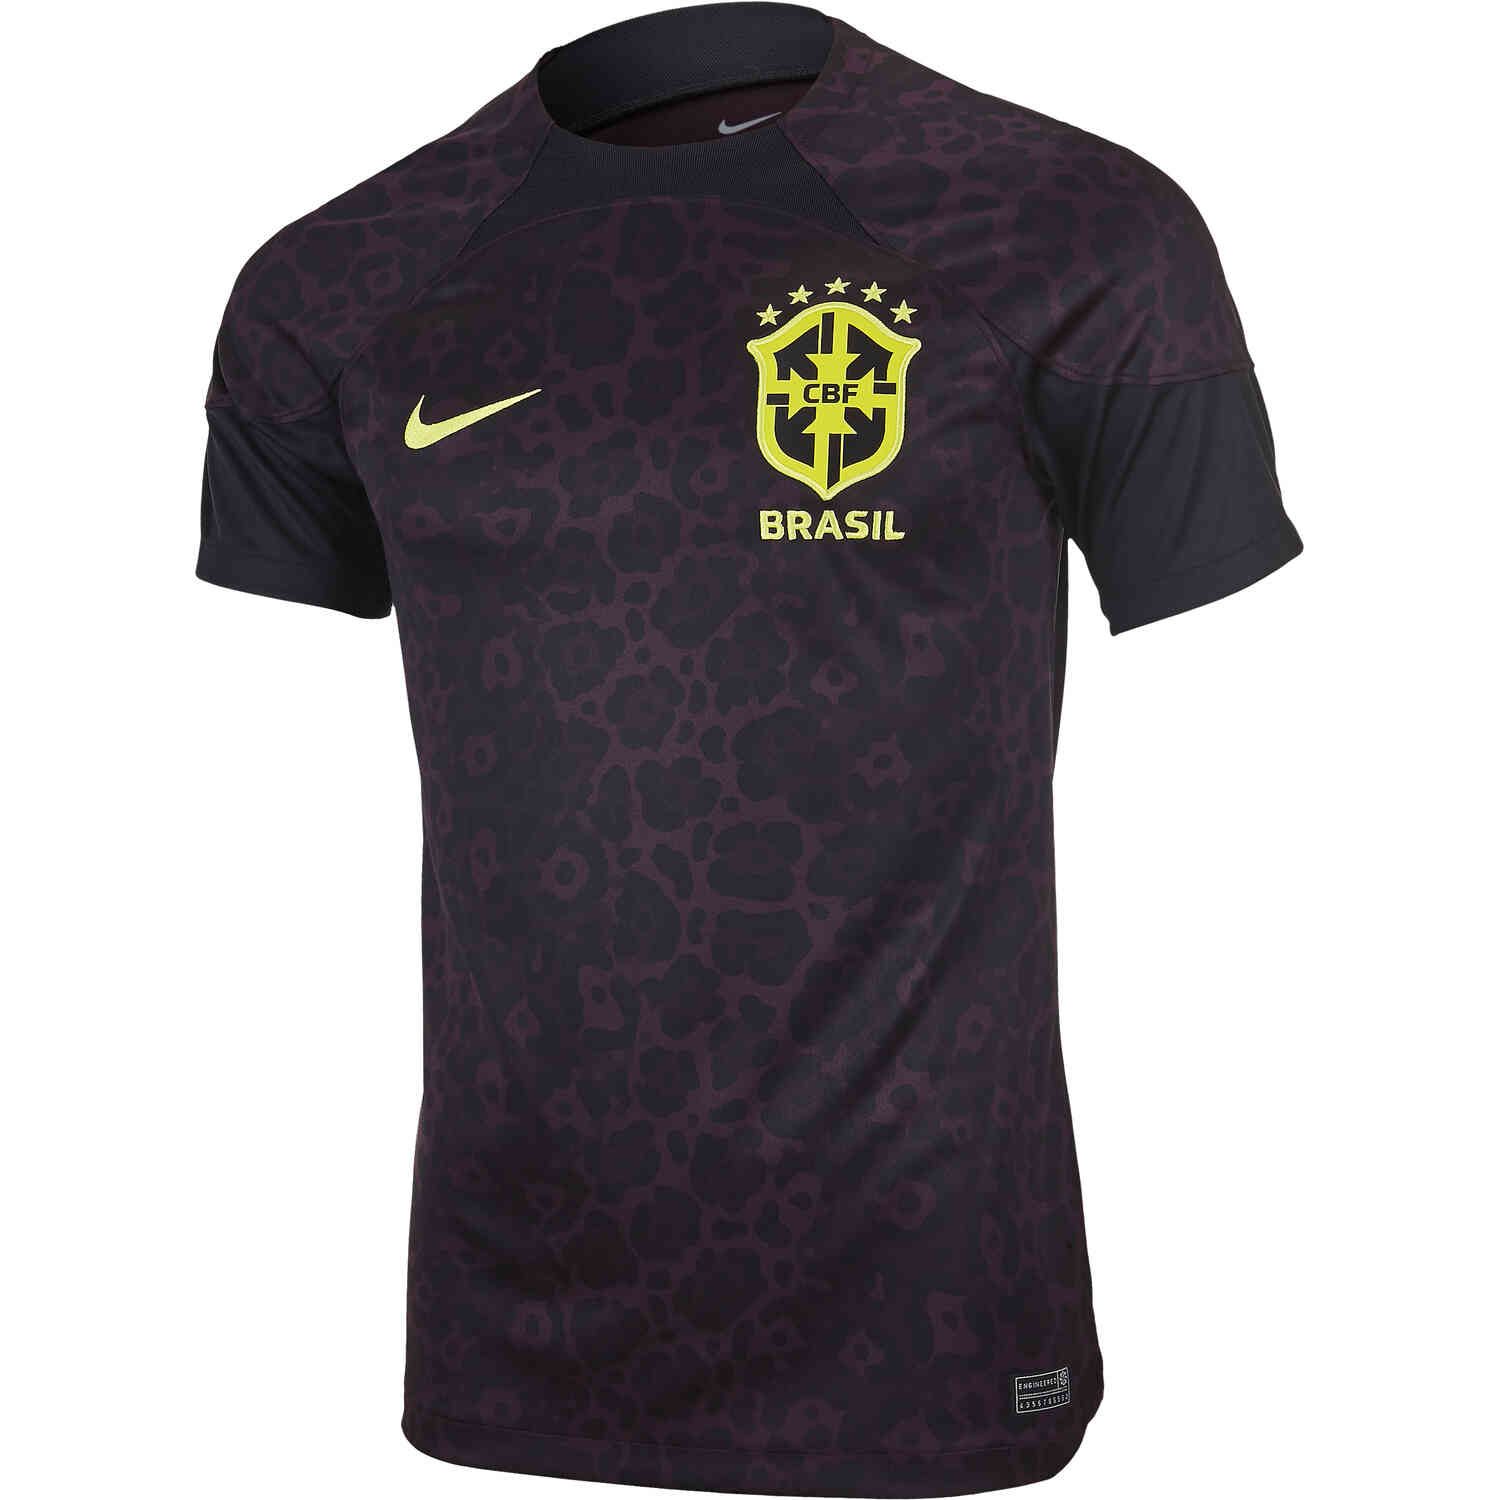 brazil jersey,brazil t shirt,brazil football jersey,brazil tshirt